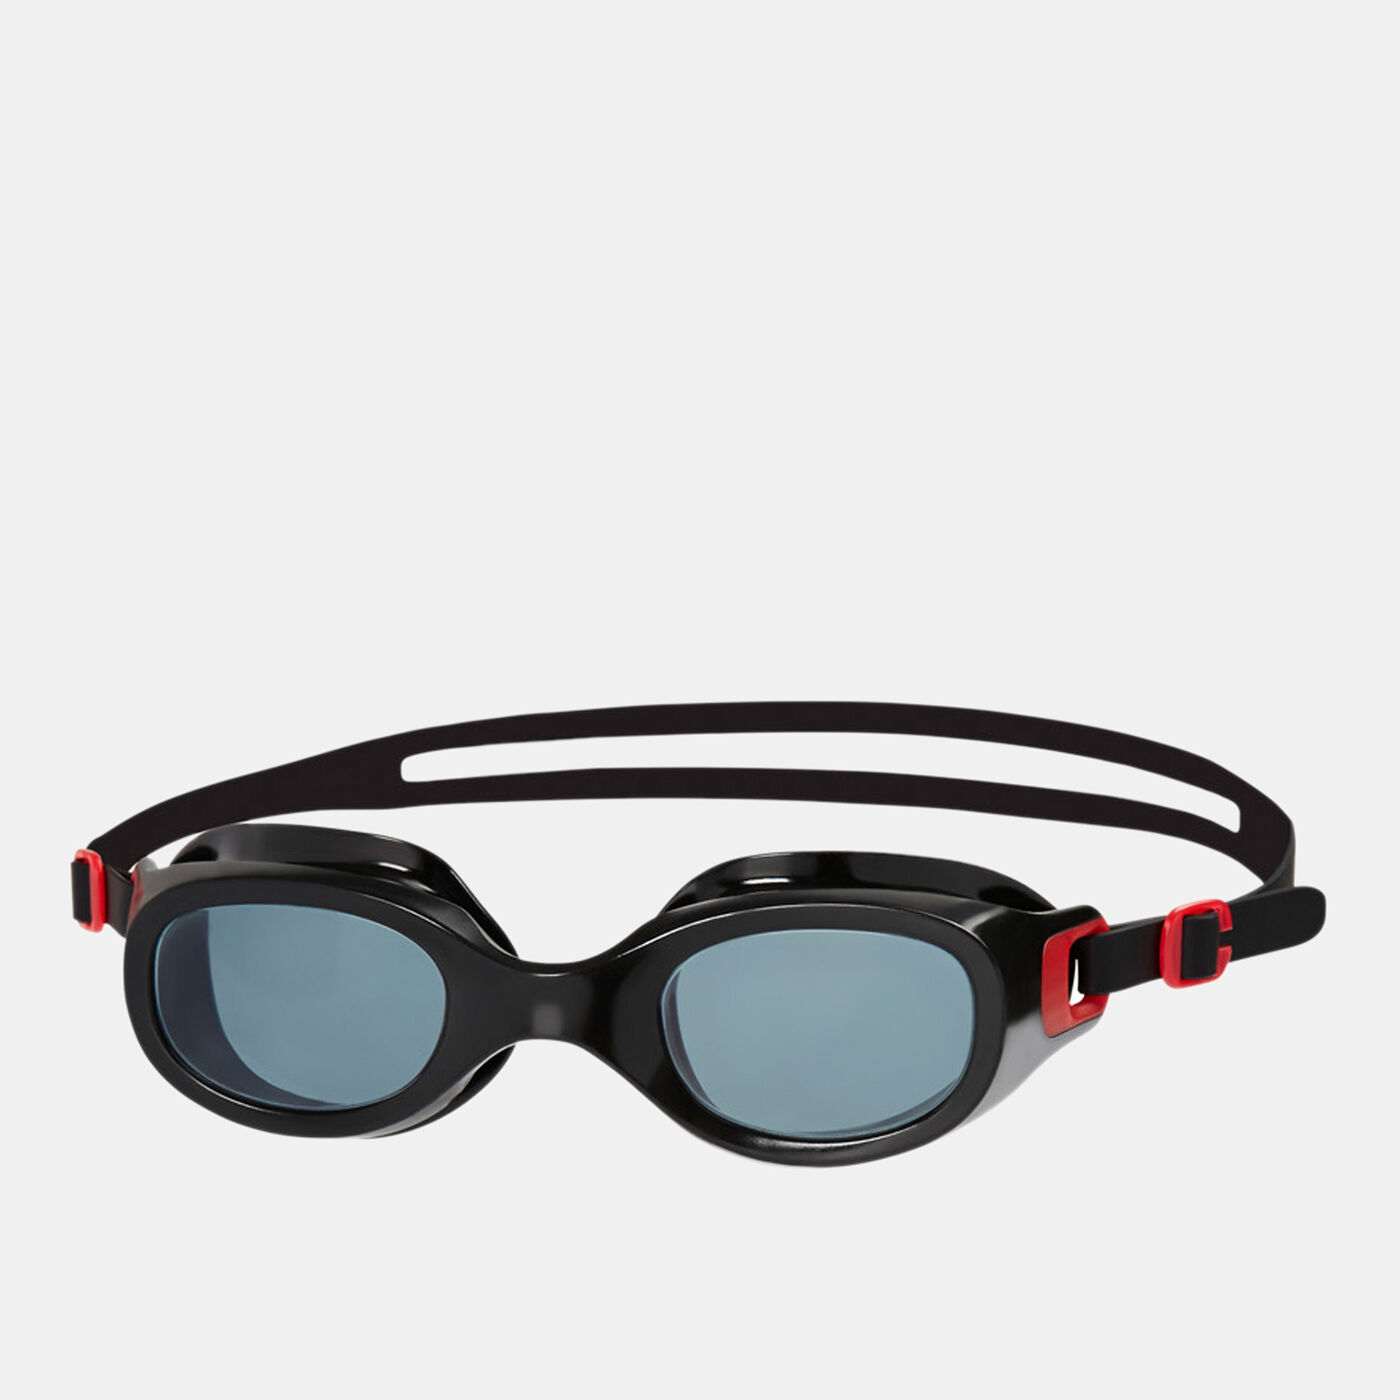 Men's Futura Classic Goggles